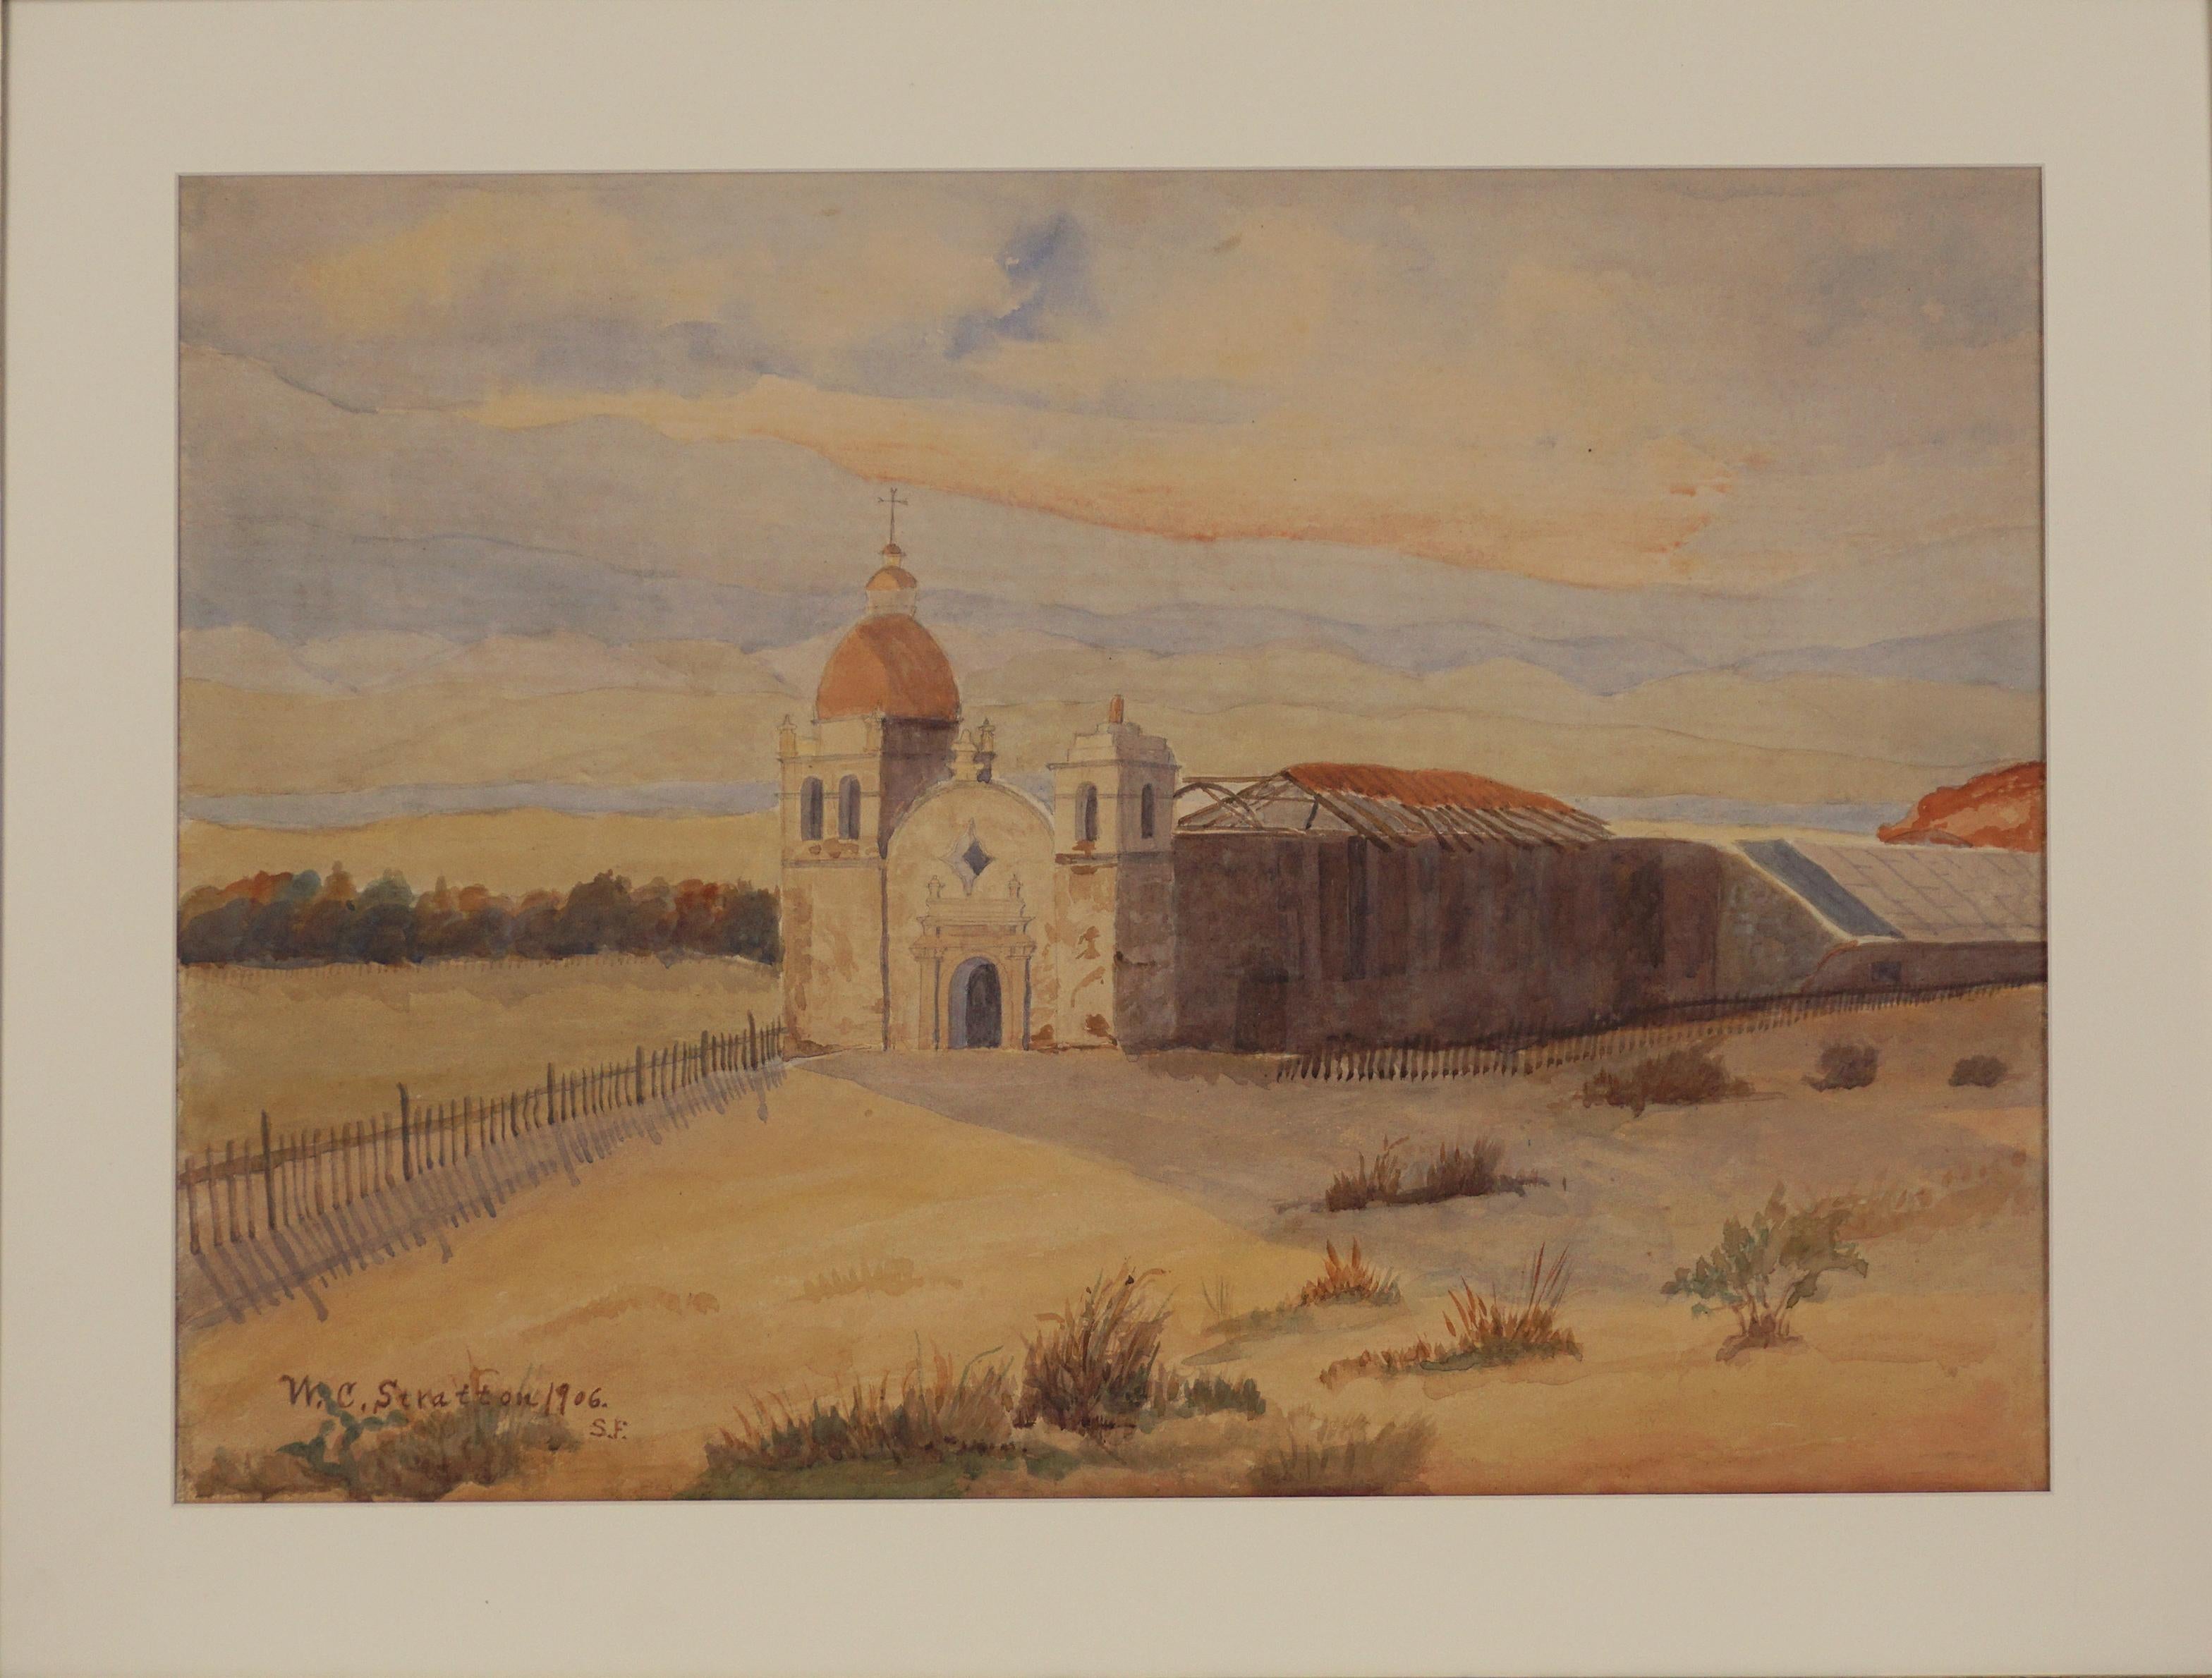 Aquarell der Mission Carmel, Kalifornien, frühes 20. Jahrhundert.  – Painting von Wallace Clinton Stratton